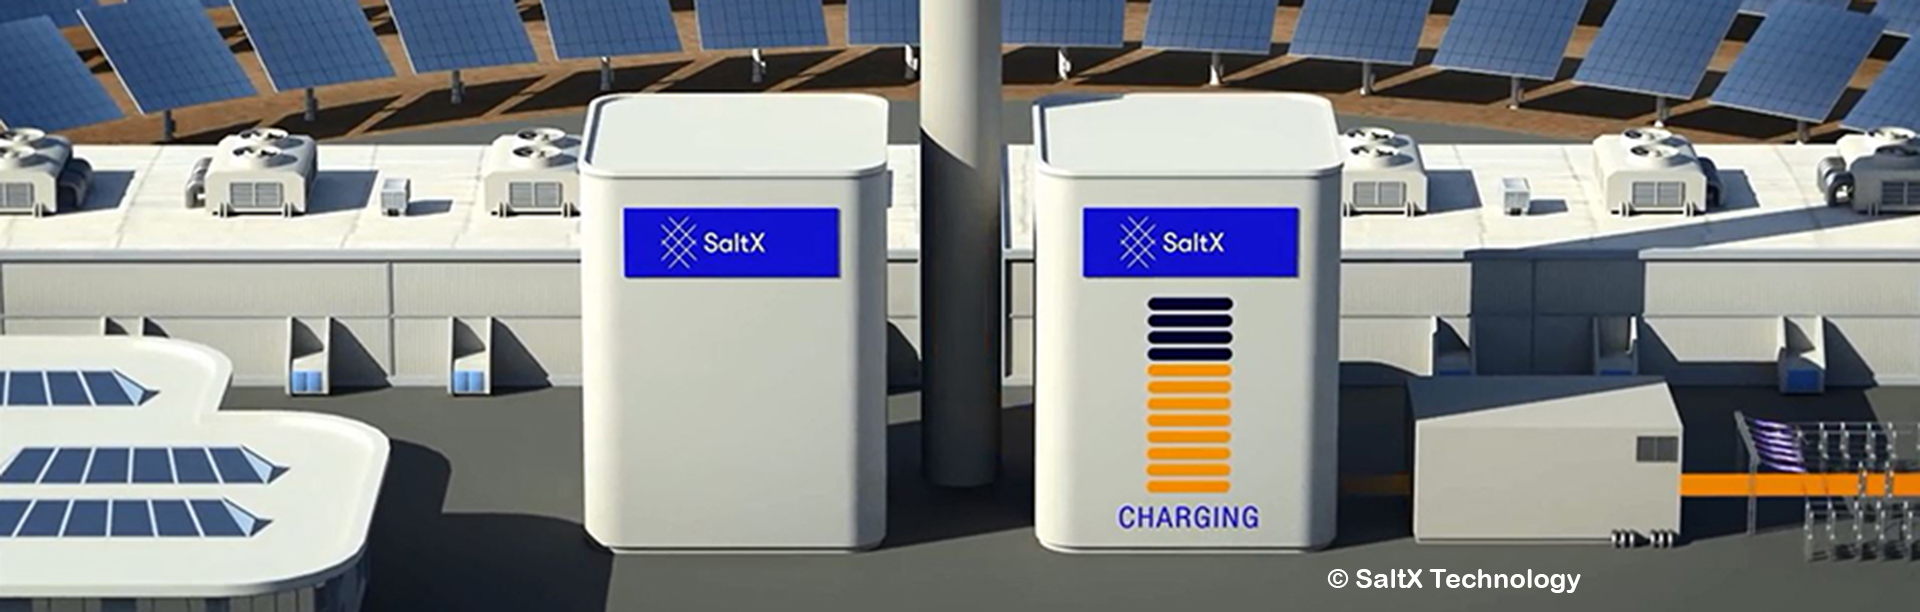 Modell der SaltX Energiespeicher-Technologie